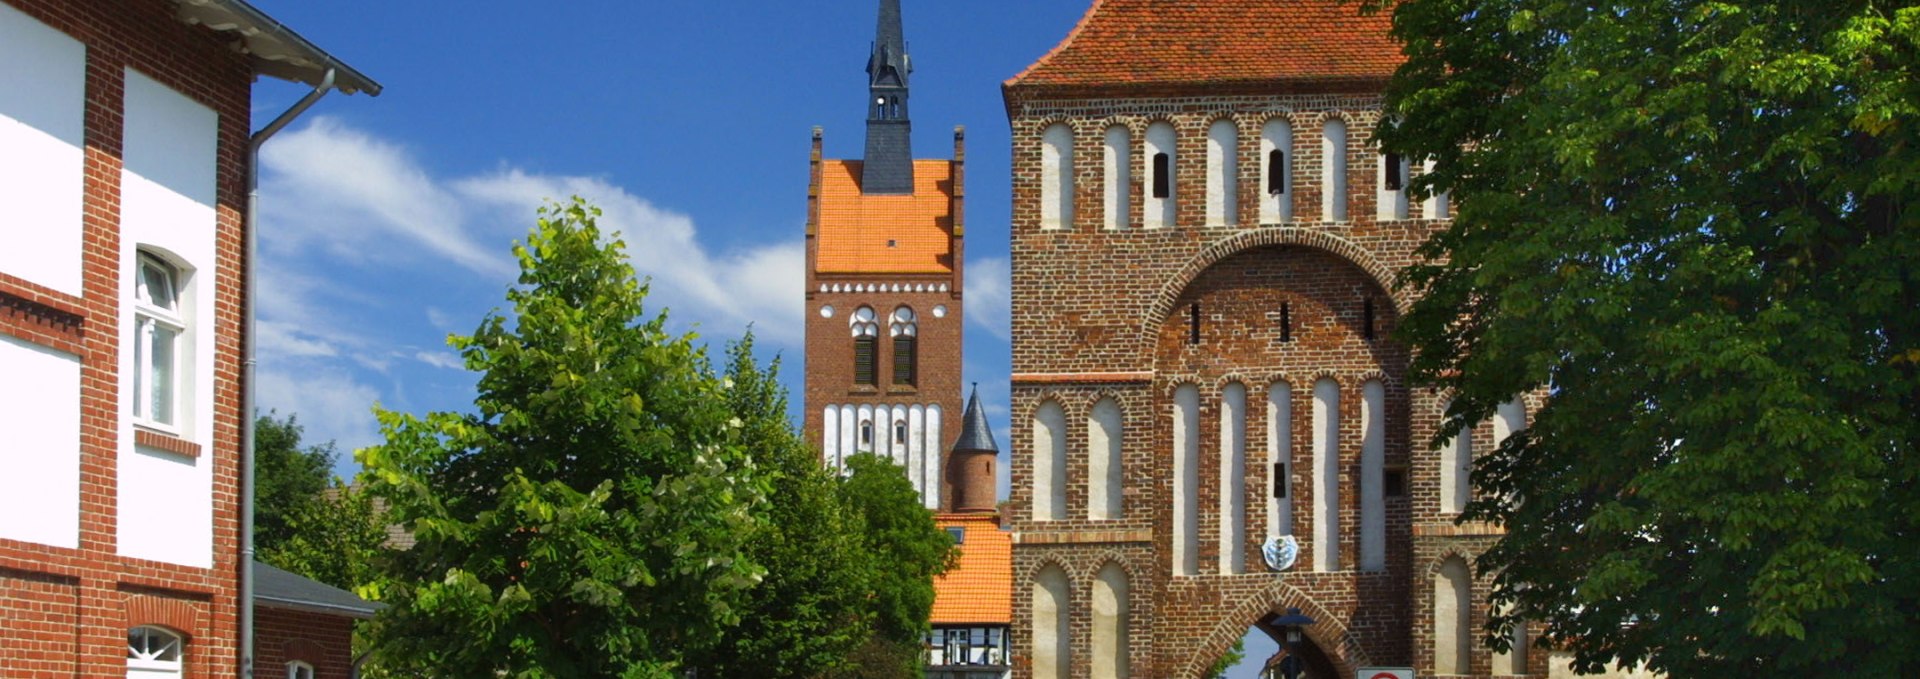 Stadttor Usedom mit Museum und Kirche, © Stadtinformation Usedom